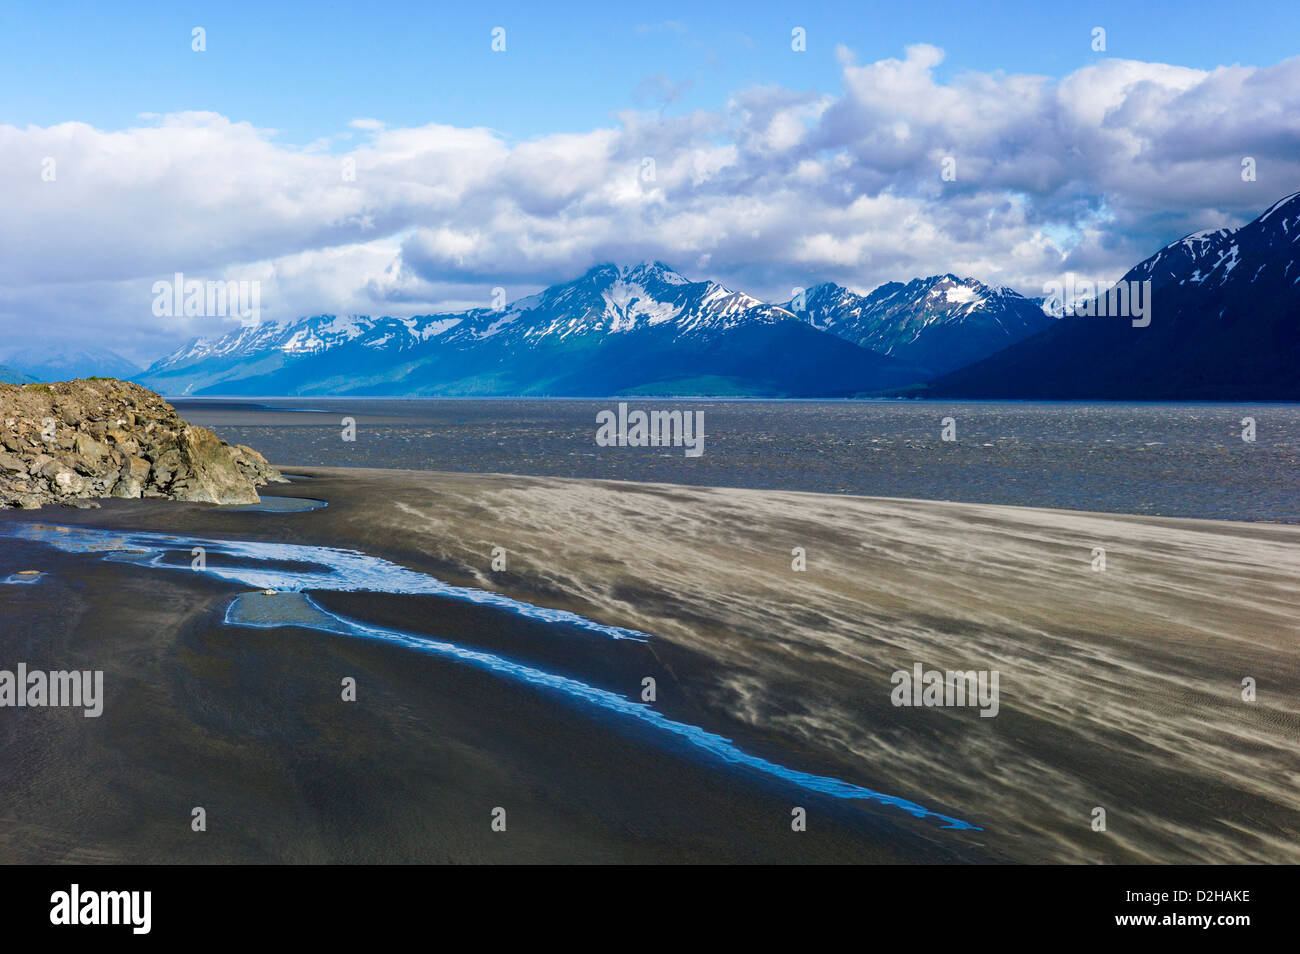 Fieros vientos rip a través de un escarpado paisaje de mar y montañas, Turnagain Arm, al sur de Anchorage, Alaska, EE.UU. Foto de stock